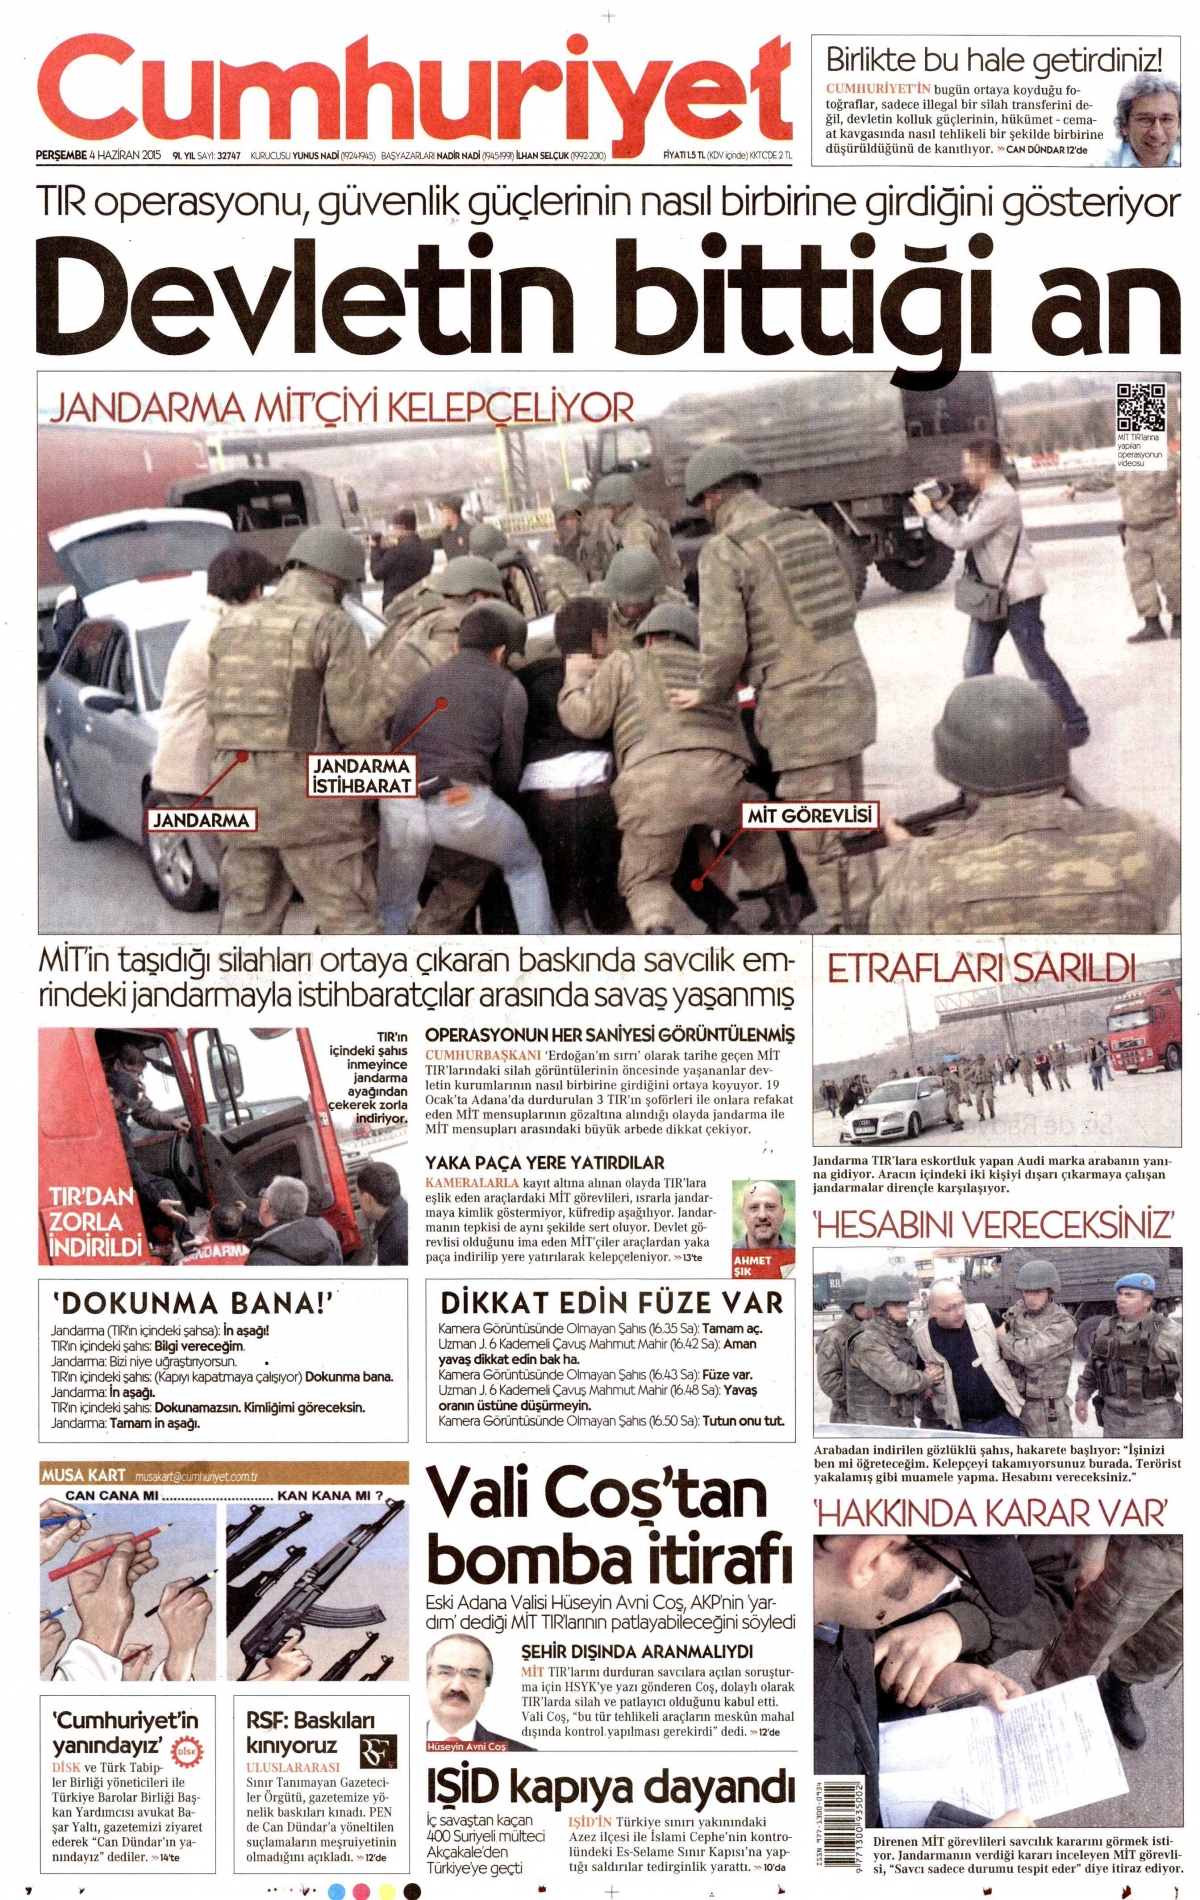 Cumhuriyet'in bugünkü (4 Haziran 2015) birinci sayfası